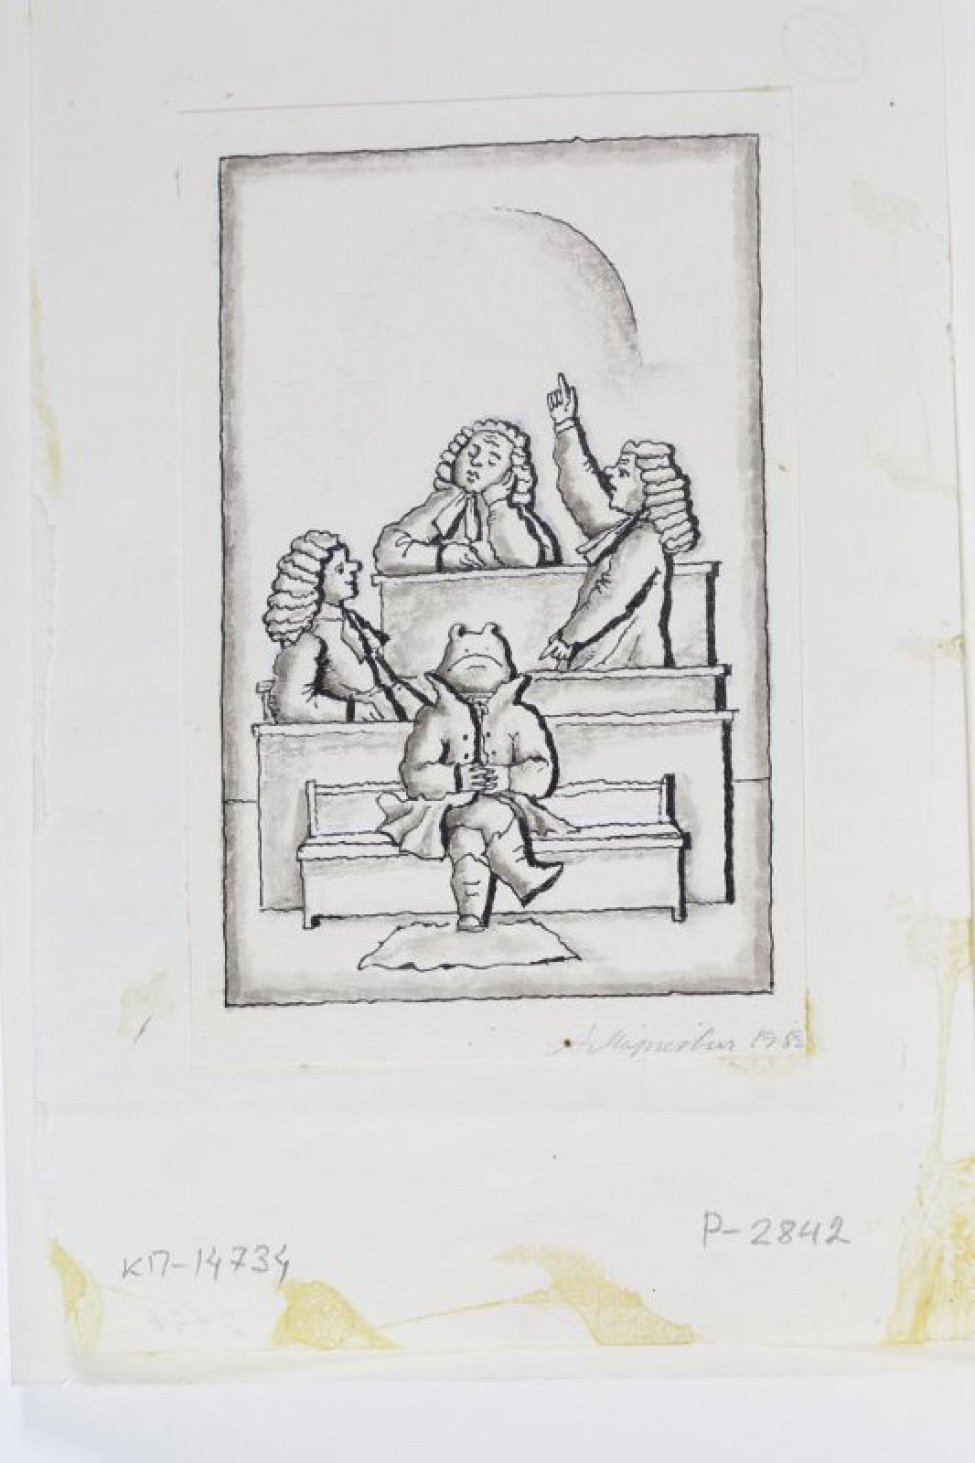 На первом плане в центре композиции - стилизованное изображение лягушки в сюртуке и сапогах, сидящей на скамейке. За ней, на втором плане, фигуры трех человек в париках и судейских мантиях.